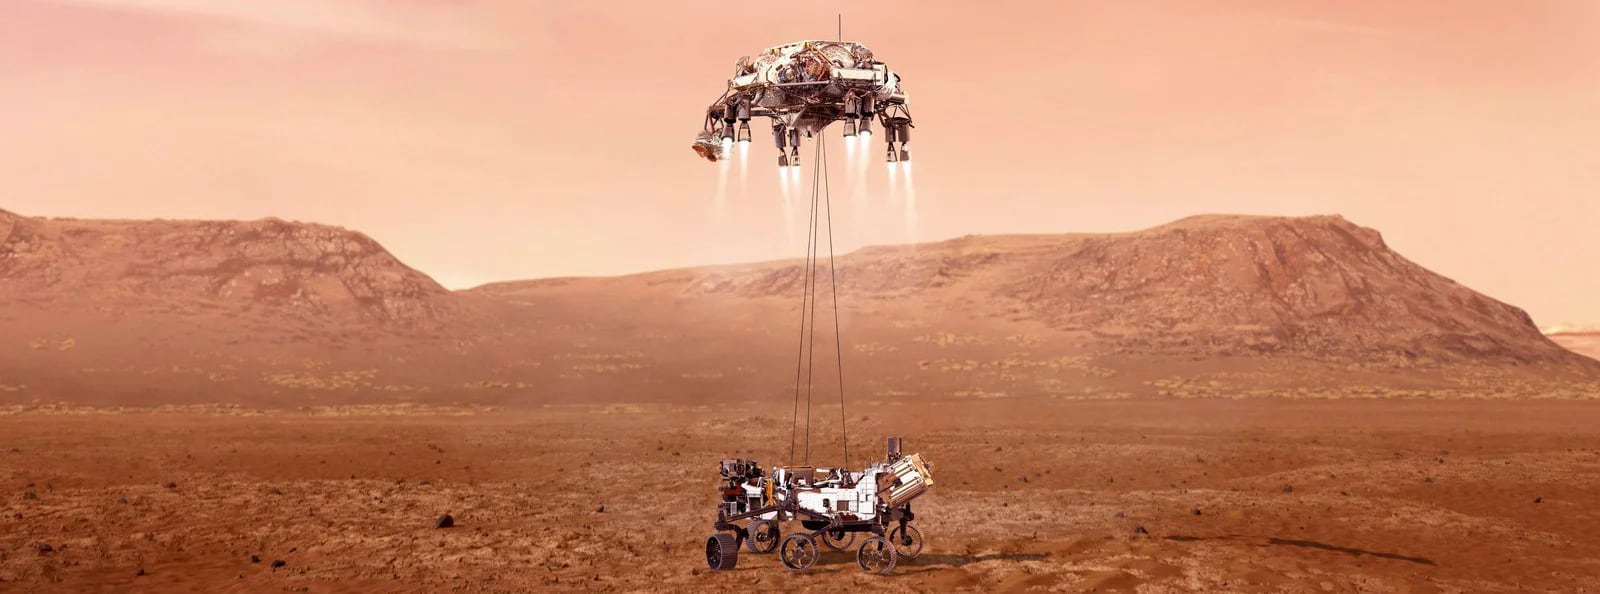 La espectacular llegada de Perseverance a Marte, con un sistema de retrocohetes y grúa (NASA)